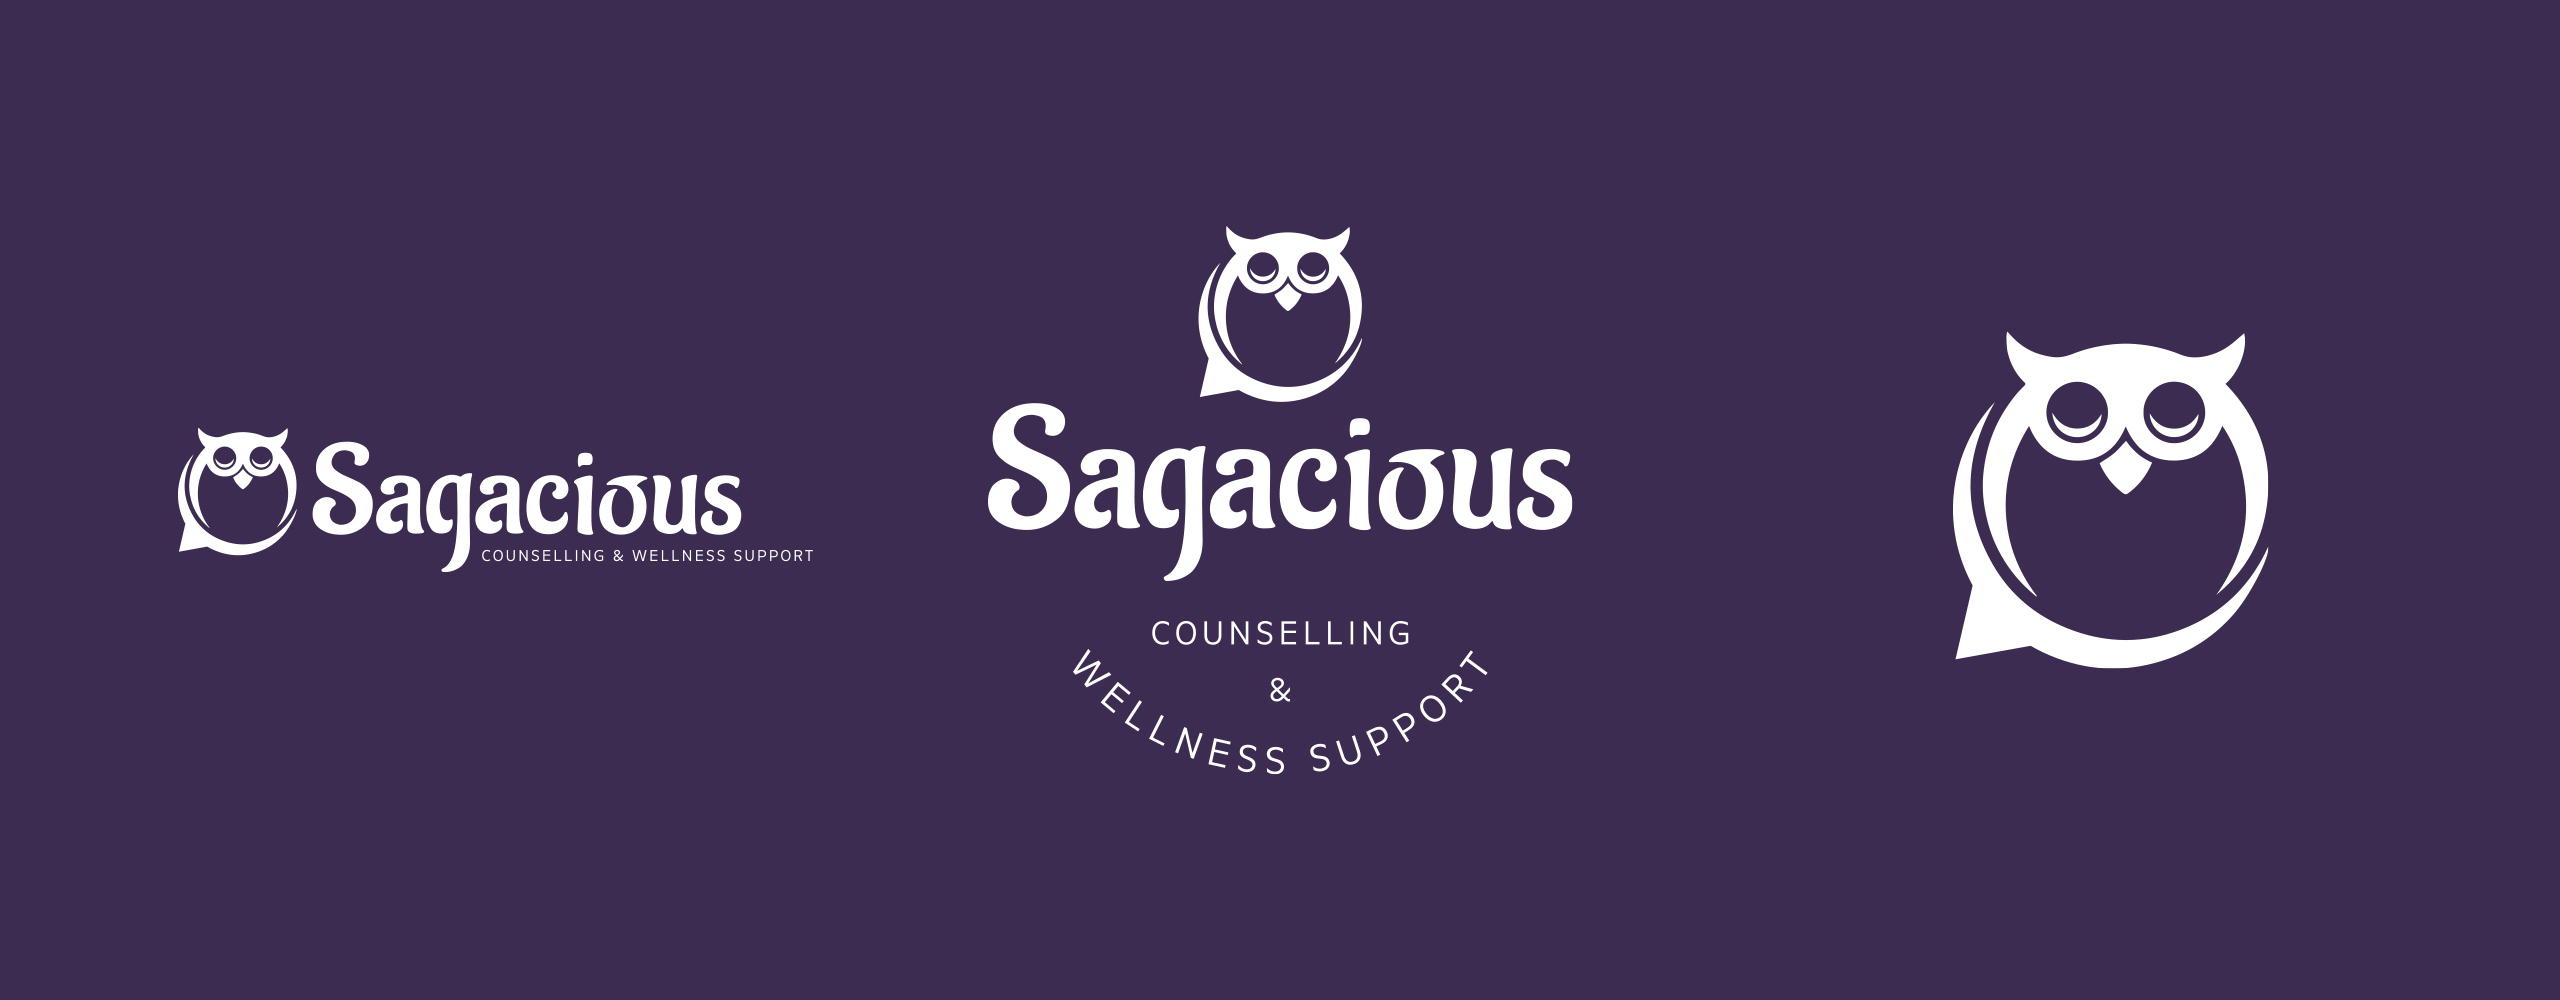 Sagacious Counselling